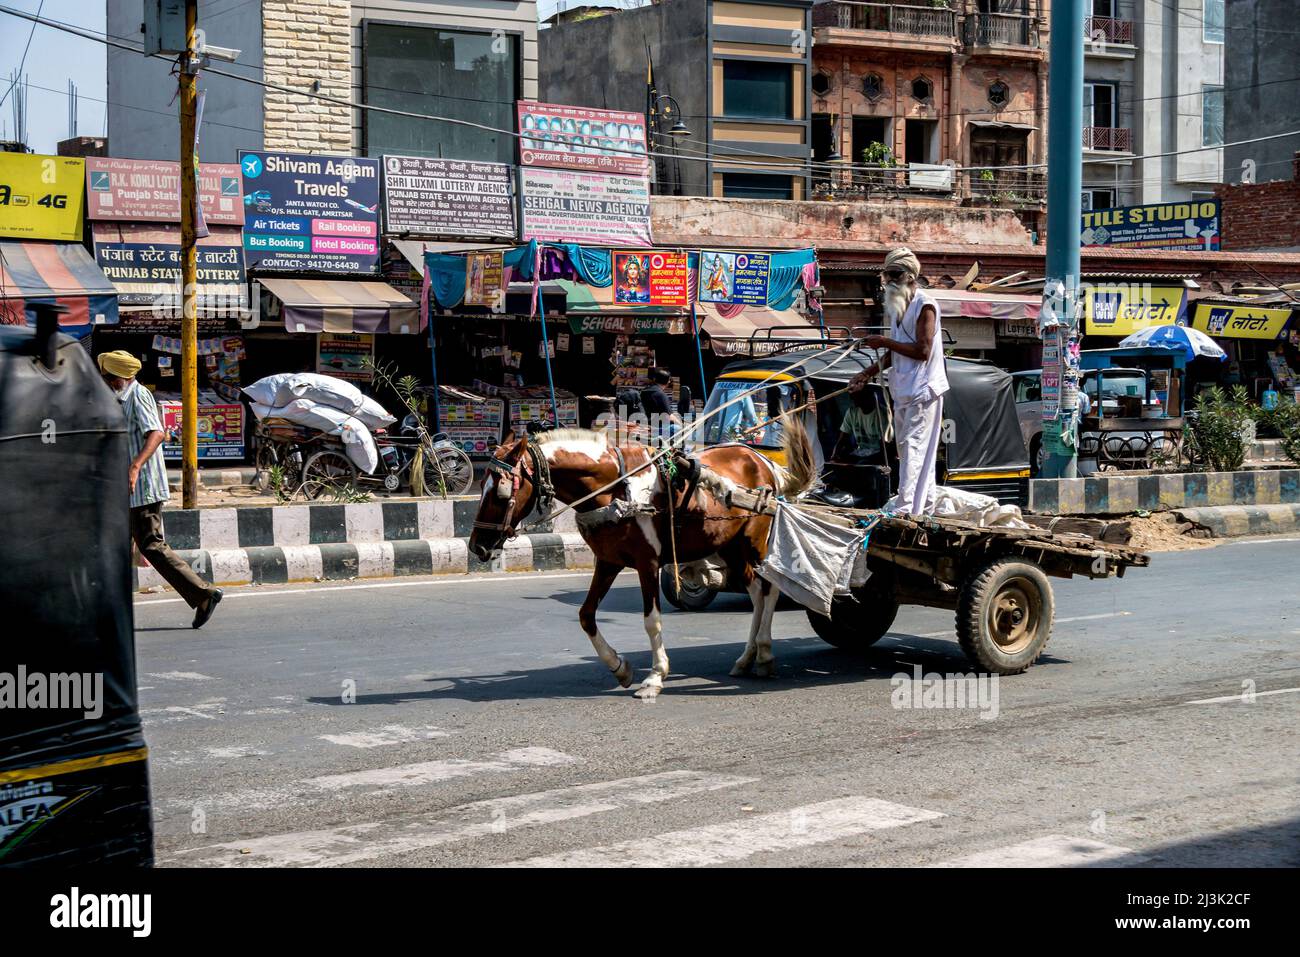 L'homme se tient sur un chariot tiré par un cheval dans une rue bordée de boutiques dans une ville en Inde; Amritsar, Punjab, Inde Banque D'Images